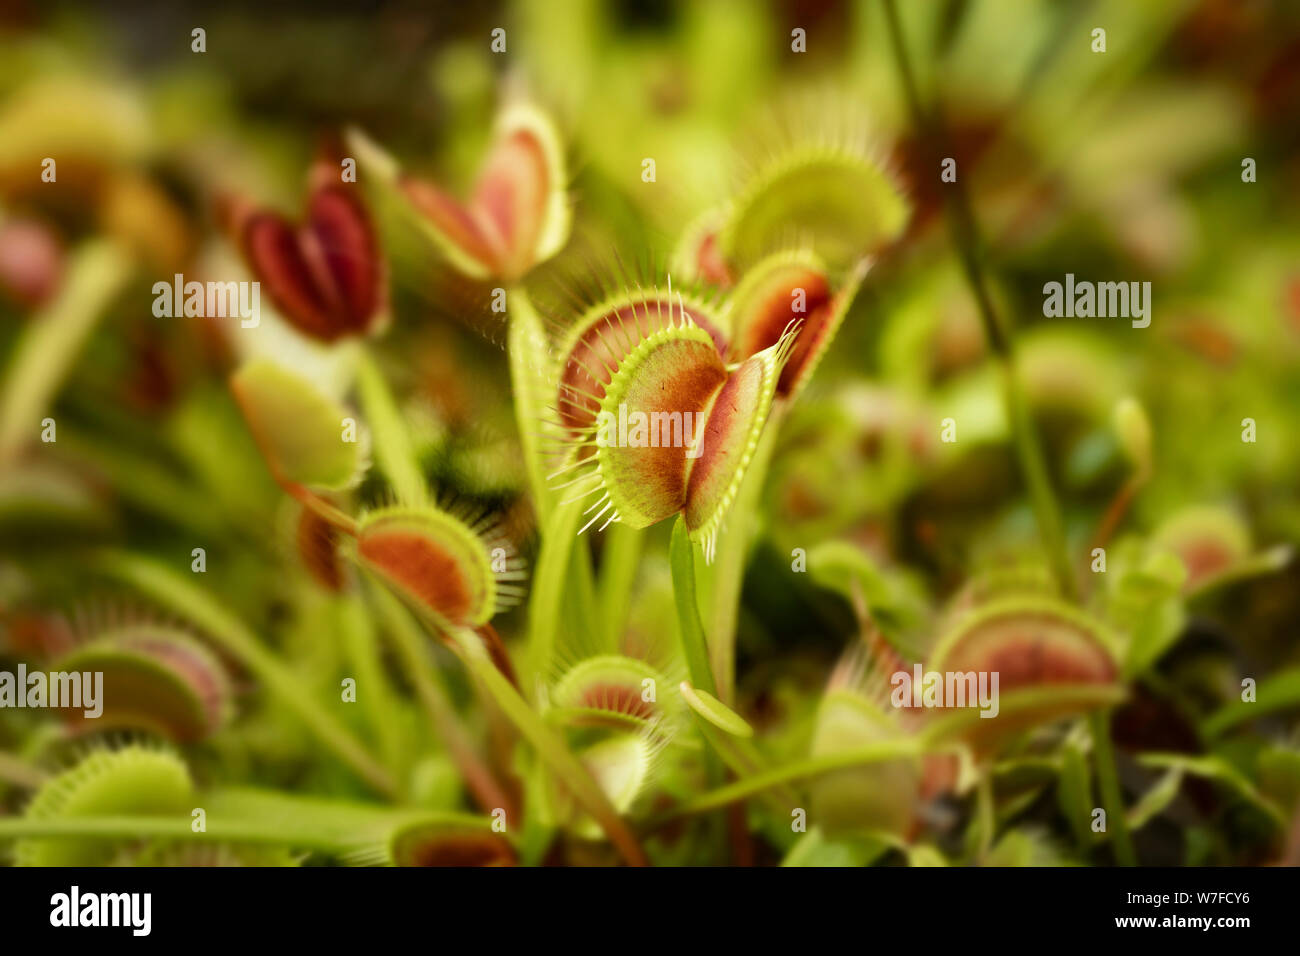 La flytrap di Venere (Dionaea muscipula), una pianta carnivora originaria delle zone umide subtropicali delle Carolinas negli Stati Uniti. Foto Stock